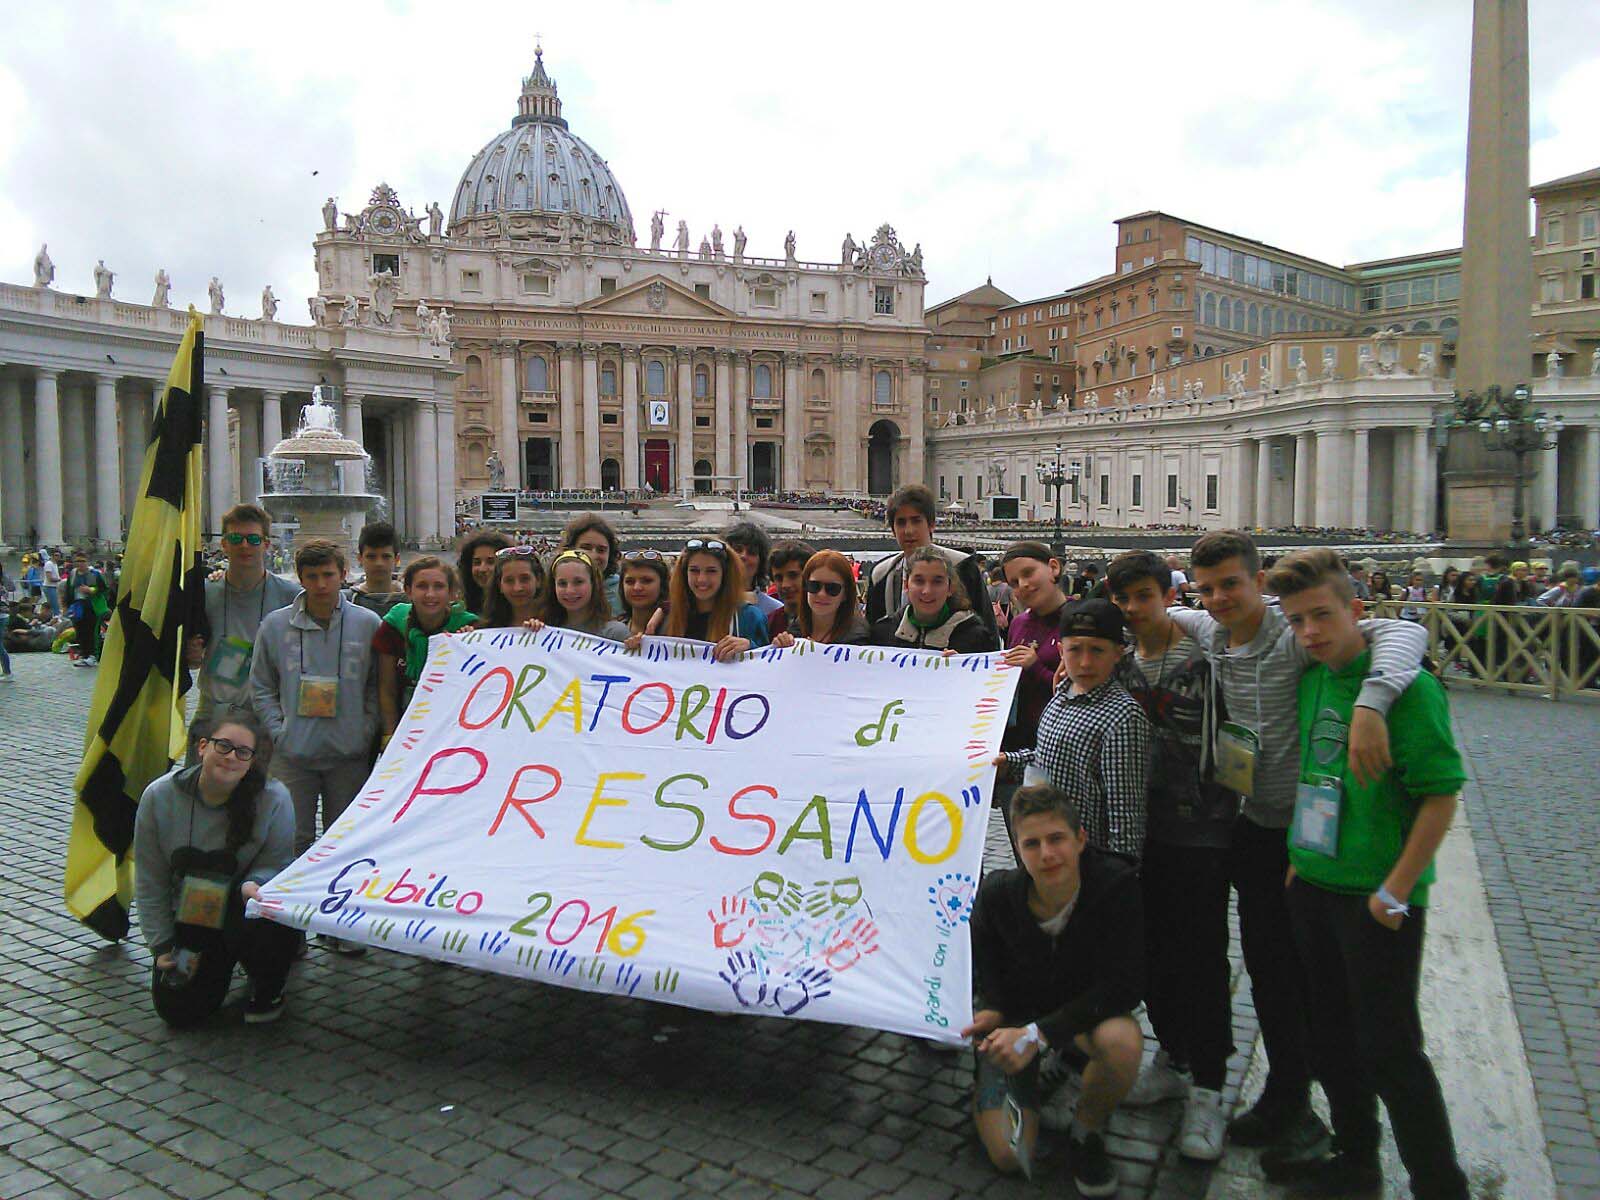 Gibileo dei ragazzi 2016 roma papa francesco confessa in piazza gruppo oratorio di pressano trento